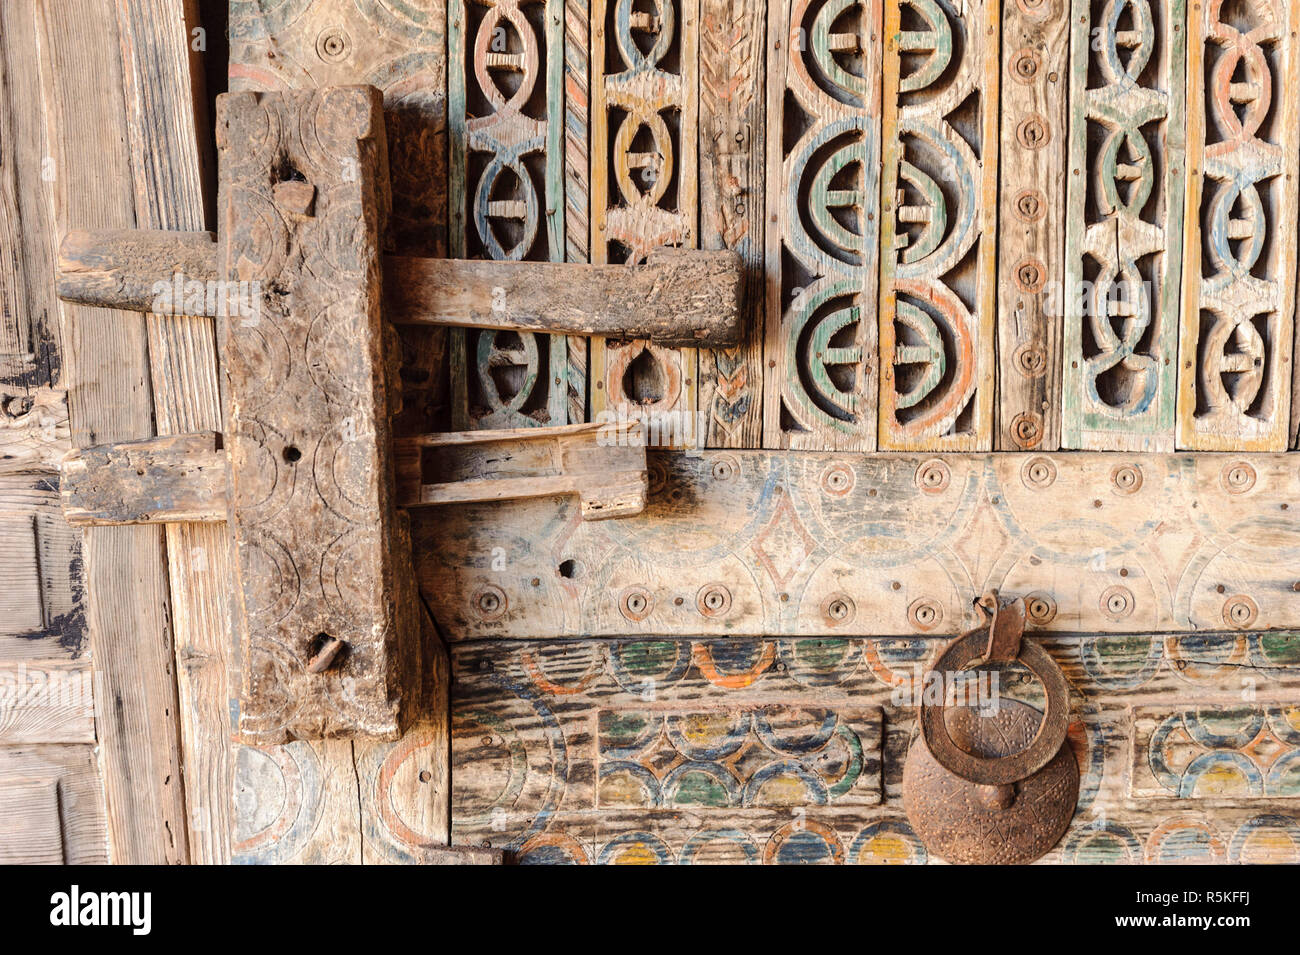 01-03-15, Marrakech, Maroc. Une ancienne porte en bois avec une serrure primitive et knocker dans la sous-région berbère de l'Atlas. Photo : © Simon Grosset Banque D'Images